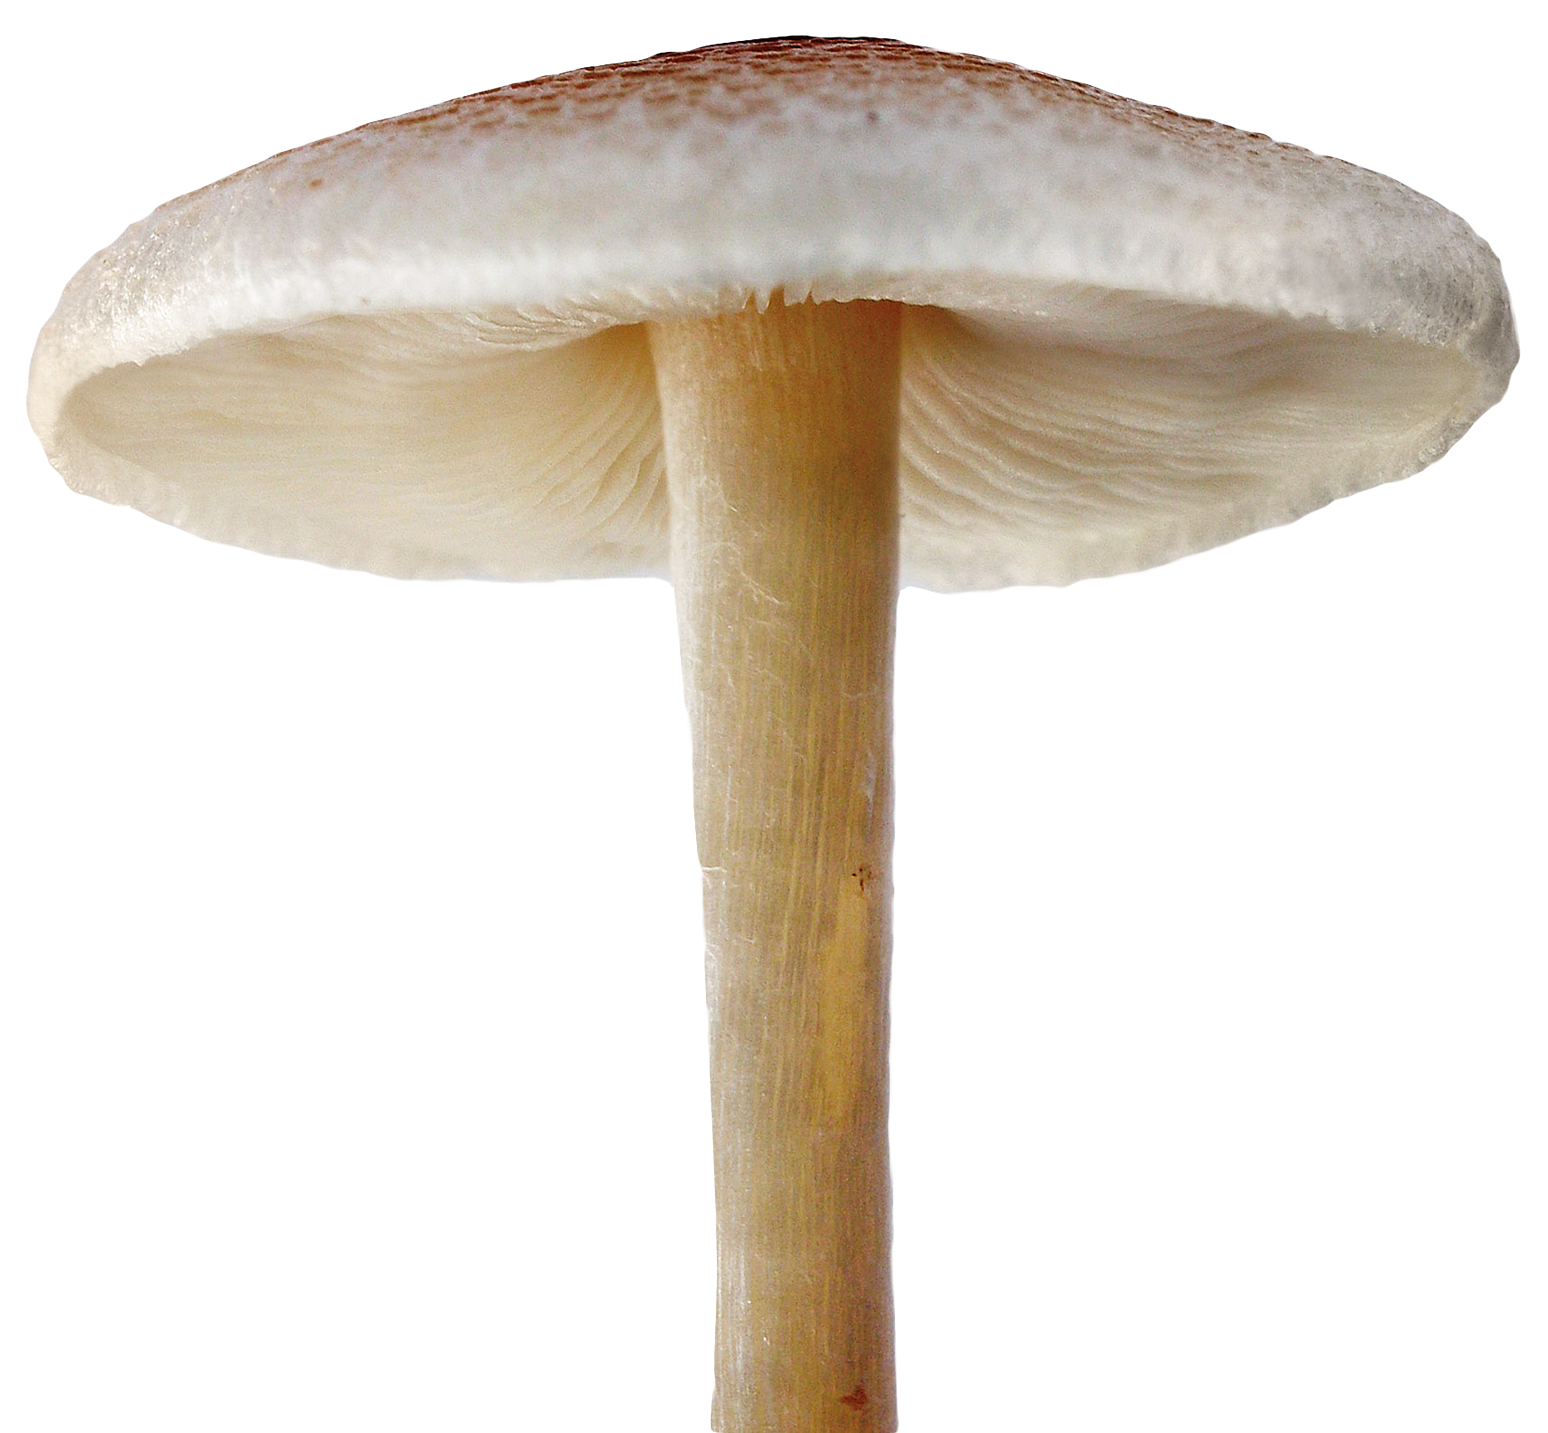 Mushroom File PNG Image